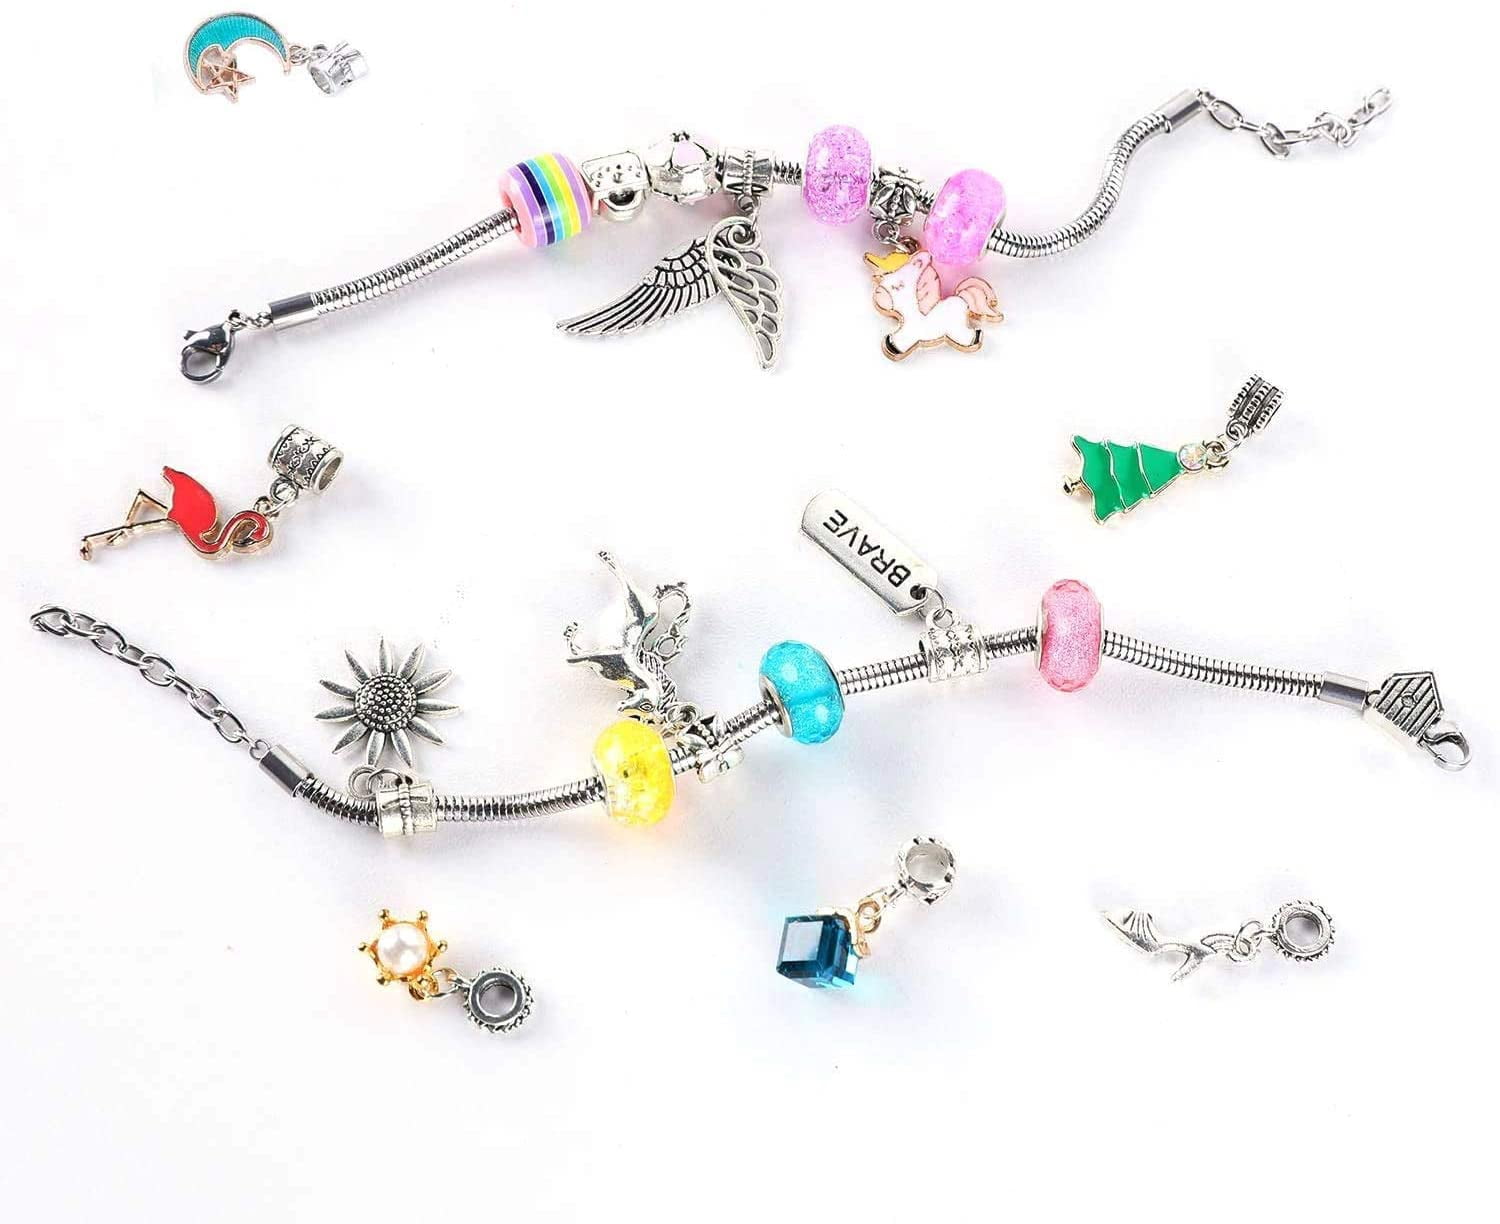  DAZZLINGKIT Bracelet Making kit Beads Charm for